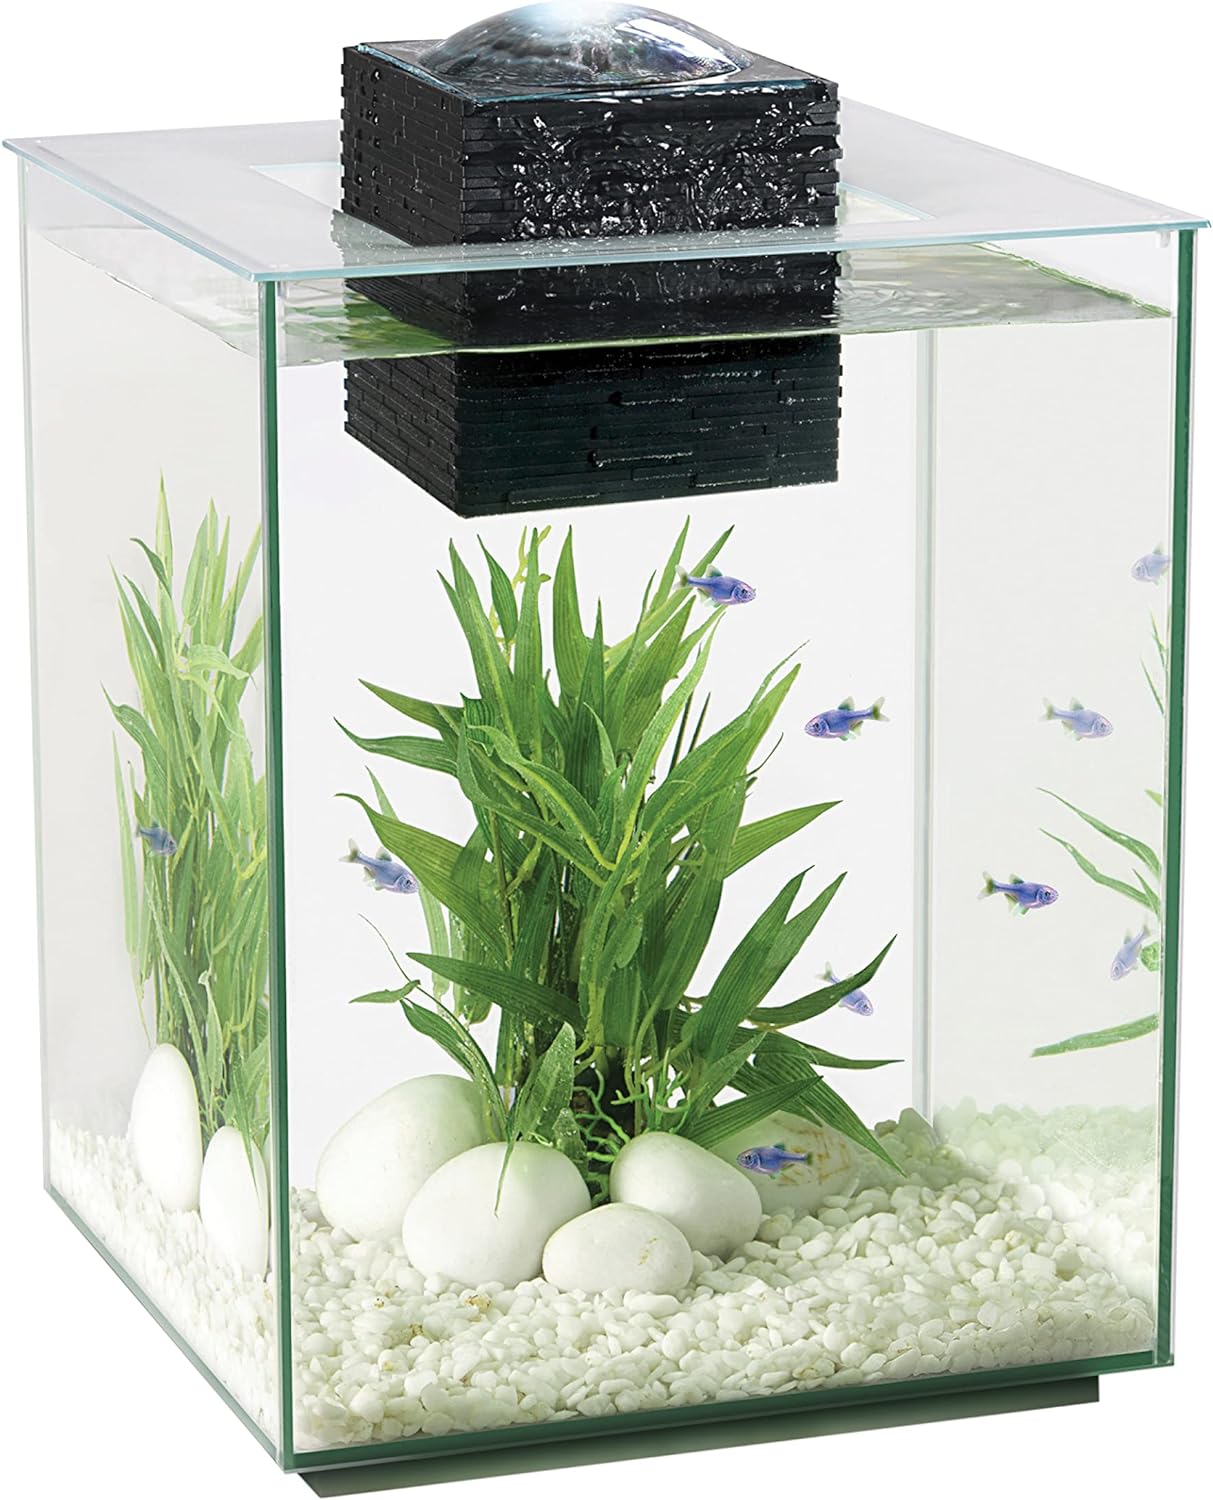 Fluval Chi II Series Aquarium Set, 5-Gallon - Aquarium Tank with Ambient LED Lighting, Flowing Water, and Elegant Design, White